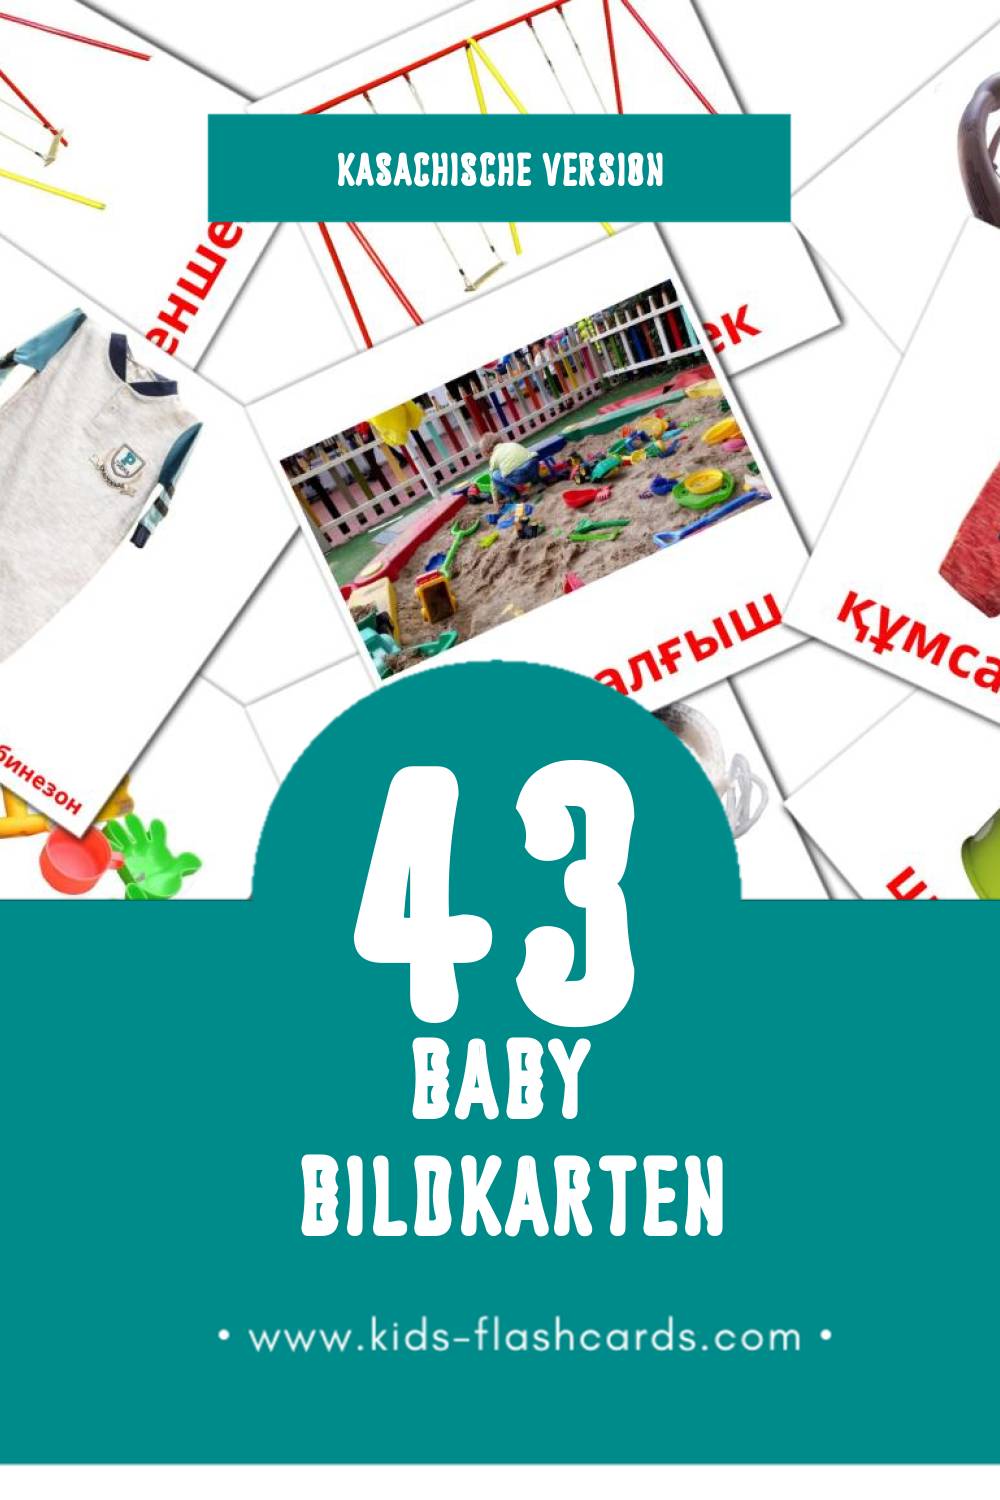 Visual Бала Flashcards für Kleinkinder (43 Karten in Kasachisch)